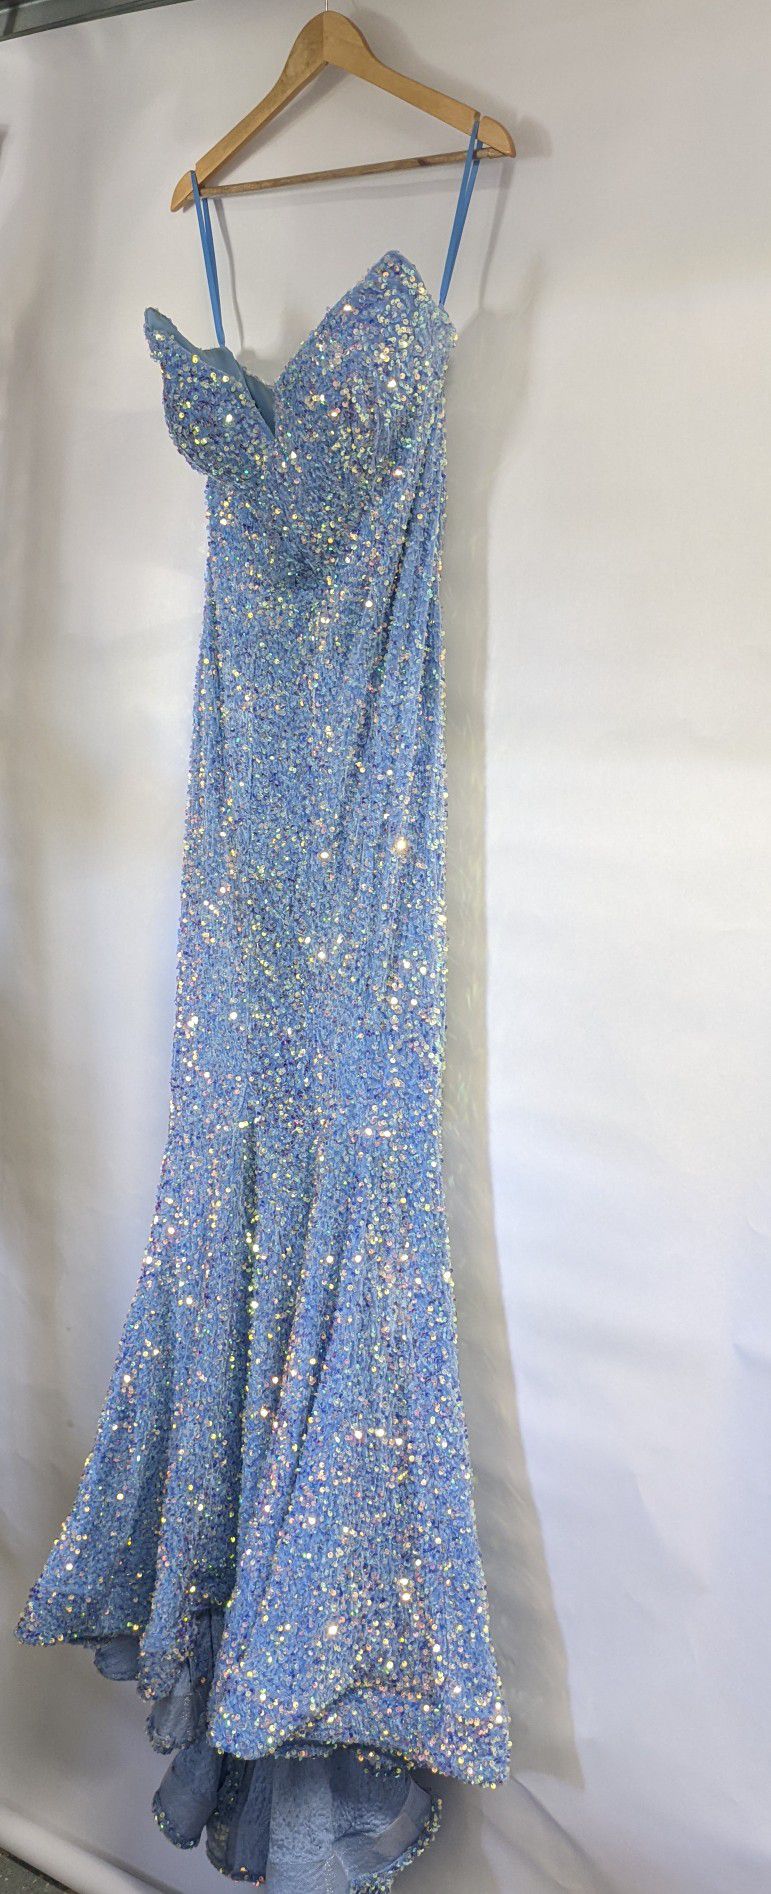 Blue Sequin Dress Size 12